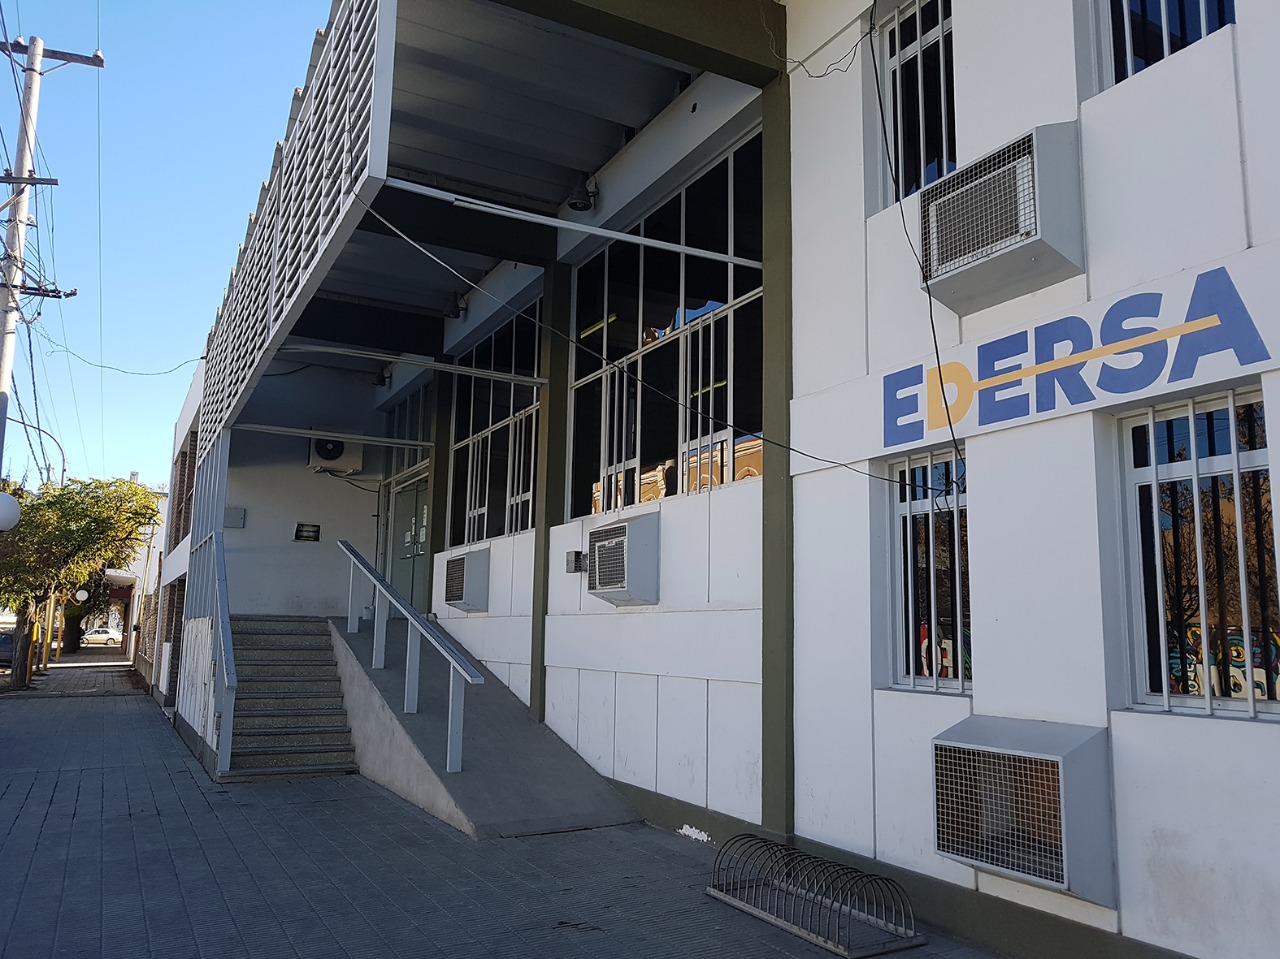 Edersa anunció un corte total de energía para este domingo en Godoy. (Foto Néstor Salas)